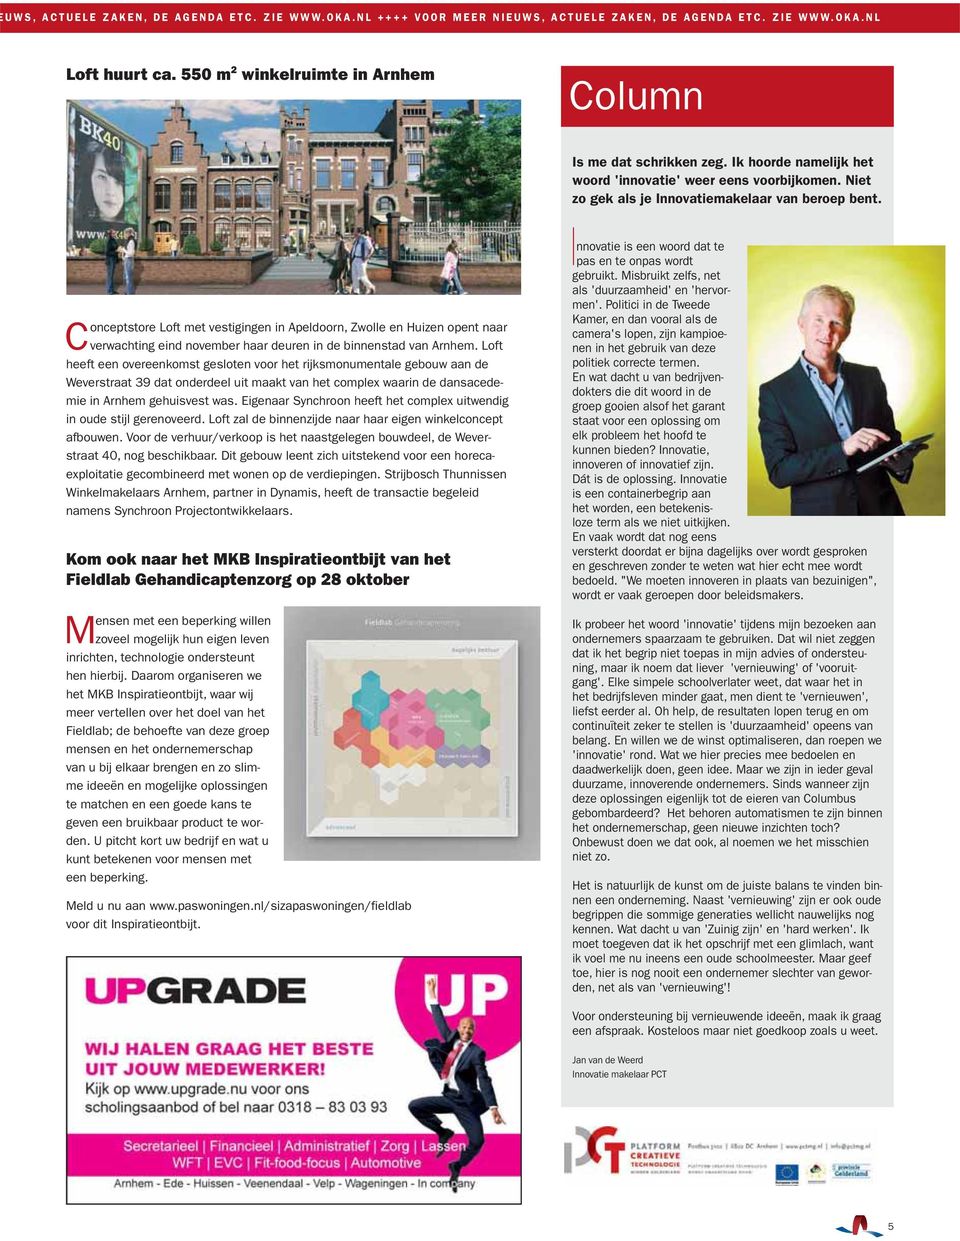 Conceptstore Loft met vestigingen in Apeldoorn, Zwolle en Huizen opent naar verwachting eind november haar deuren in de binnenstad van Arnhem.